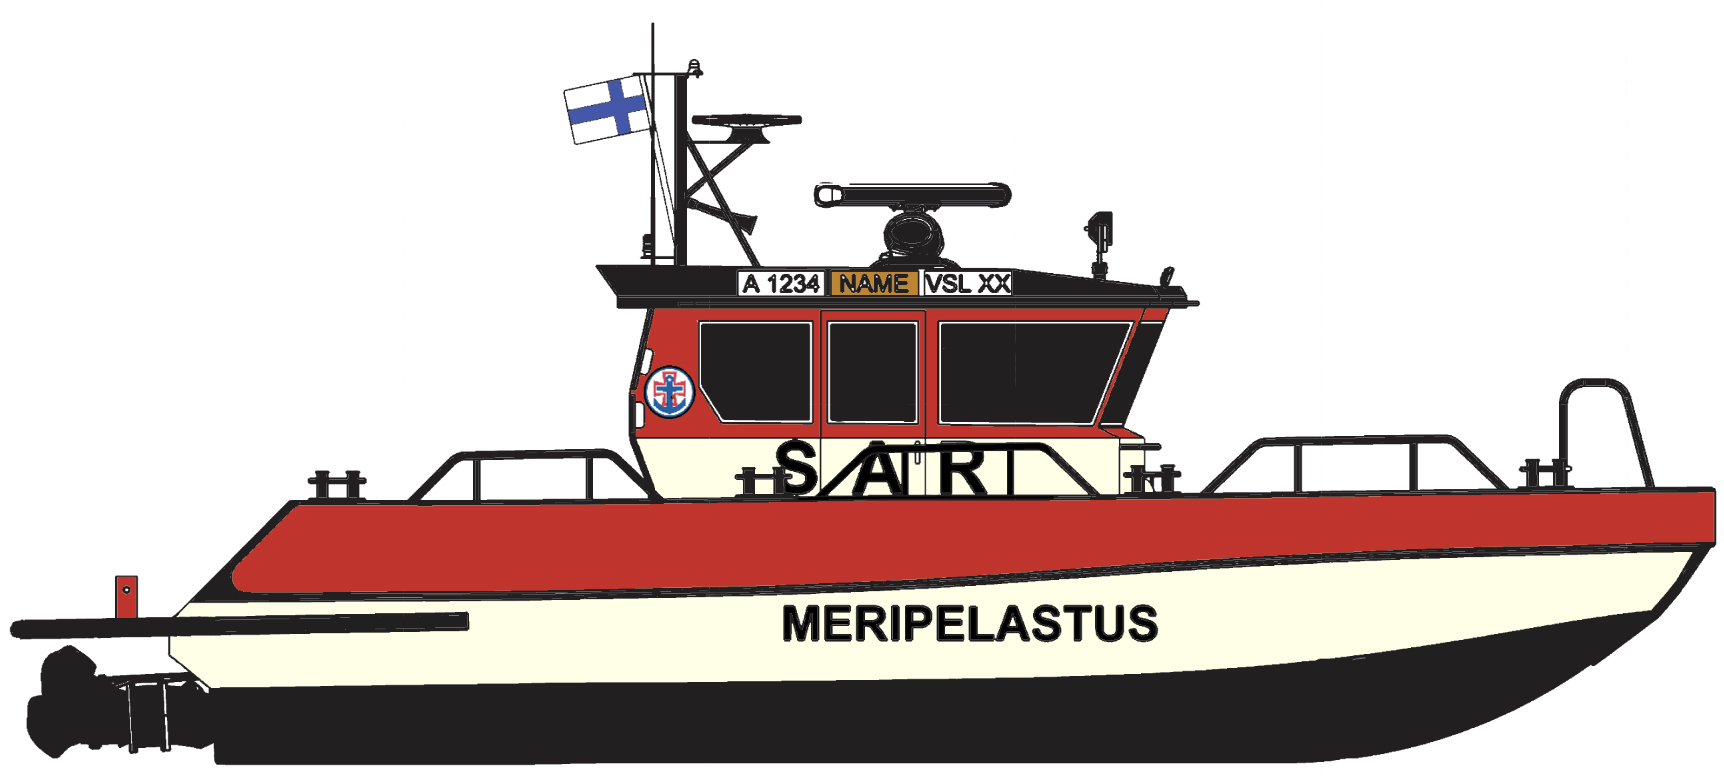 Meripelastusseura hankkii kymmenen uutta meripelastusvenettä - Suomen  Meripelastusseura